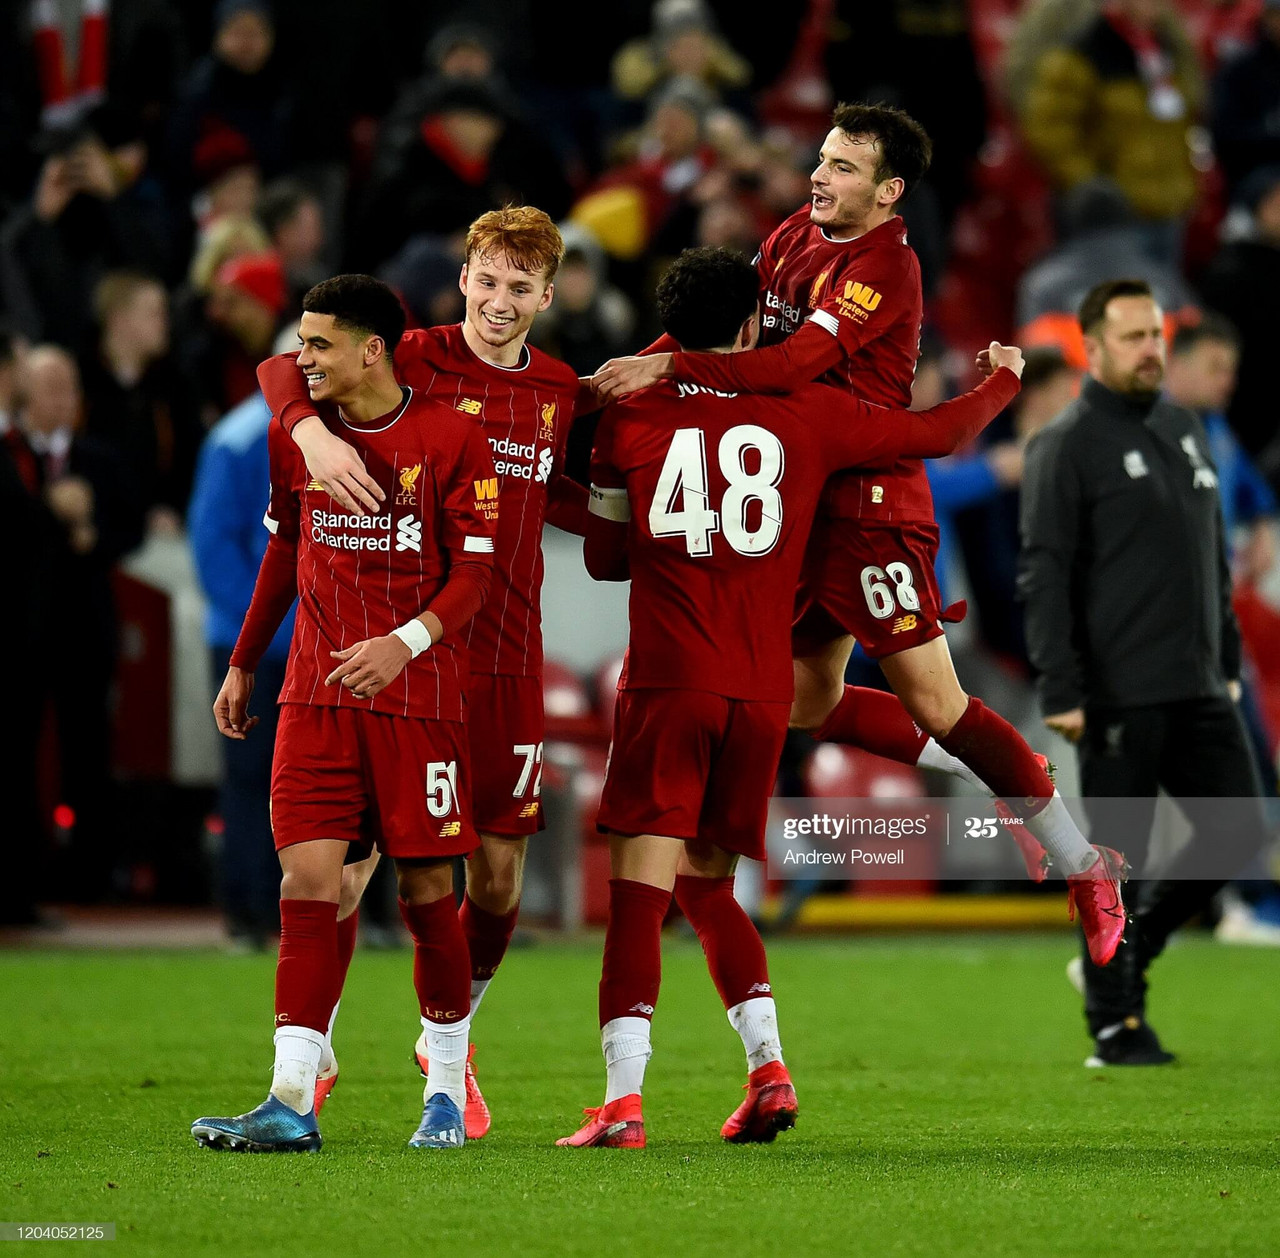 Liverpool's stars-in-waiting: Sepp van den Berg